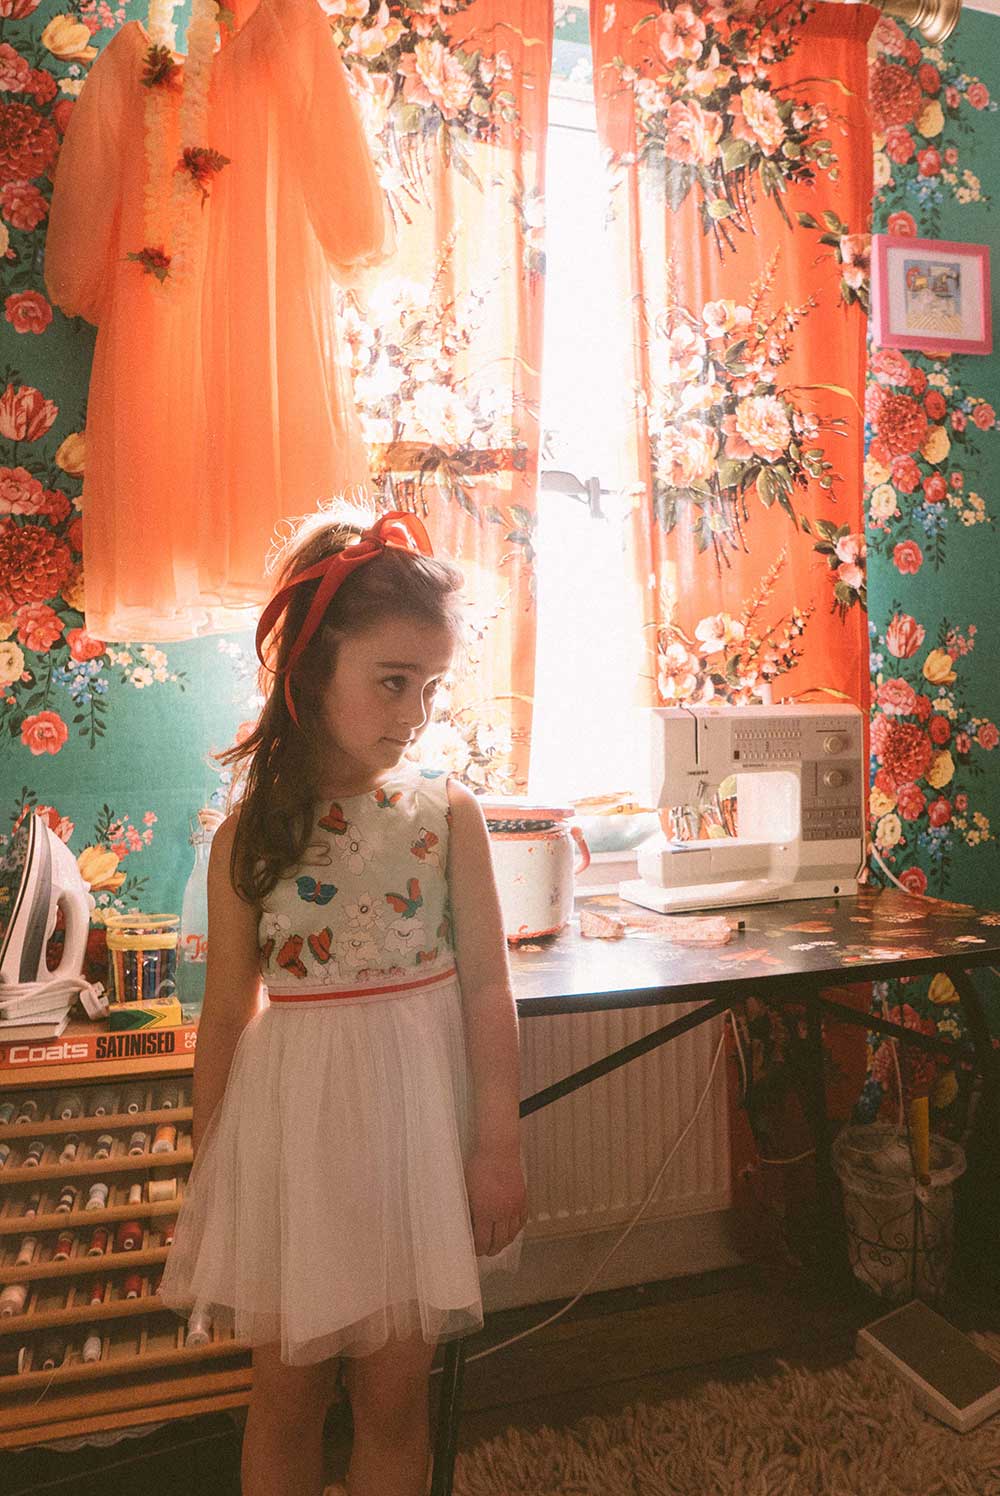 A girl wearing a flowery dress